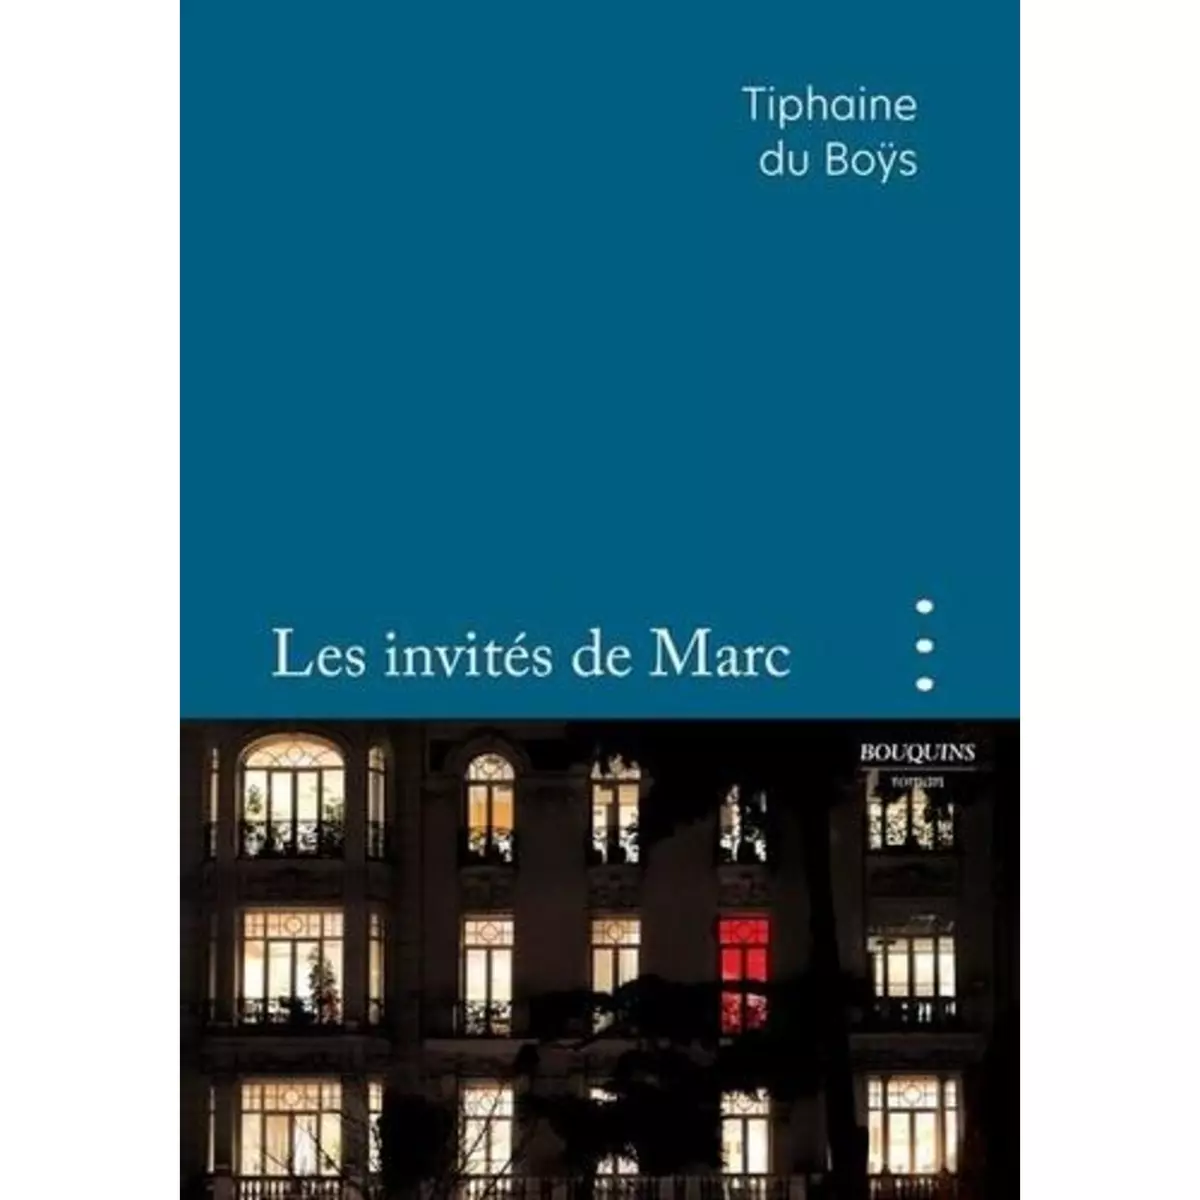  LES INVITES DE MARC, Du Boÿs Tiphaine